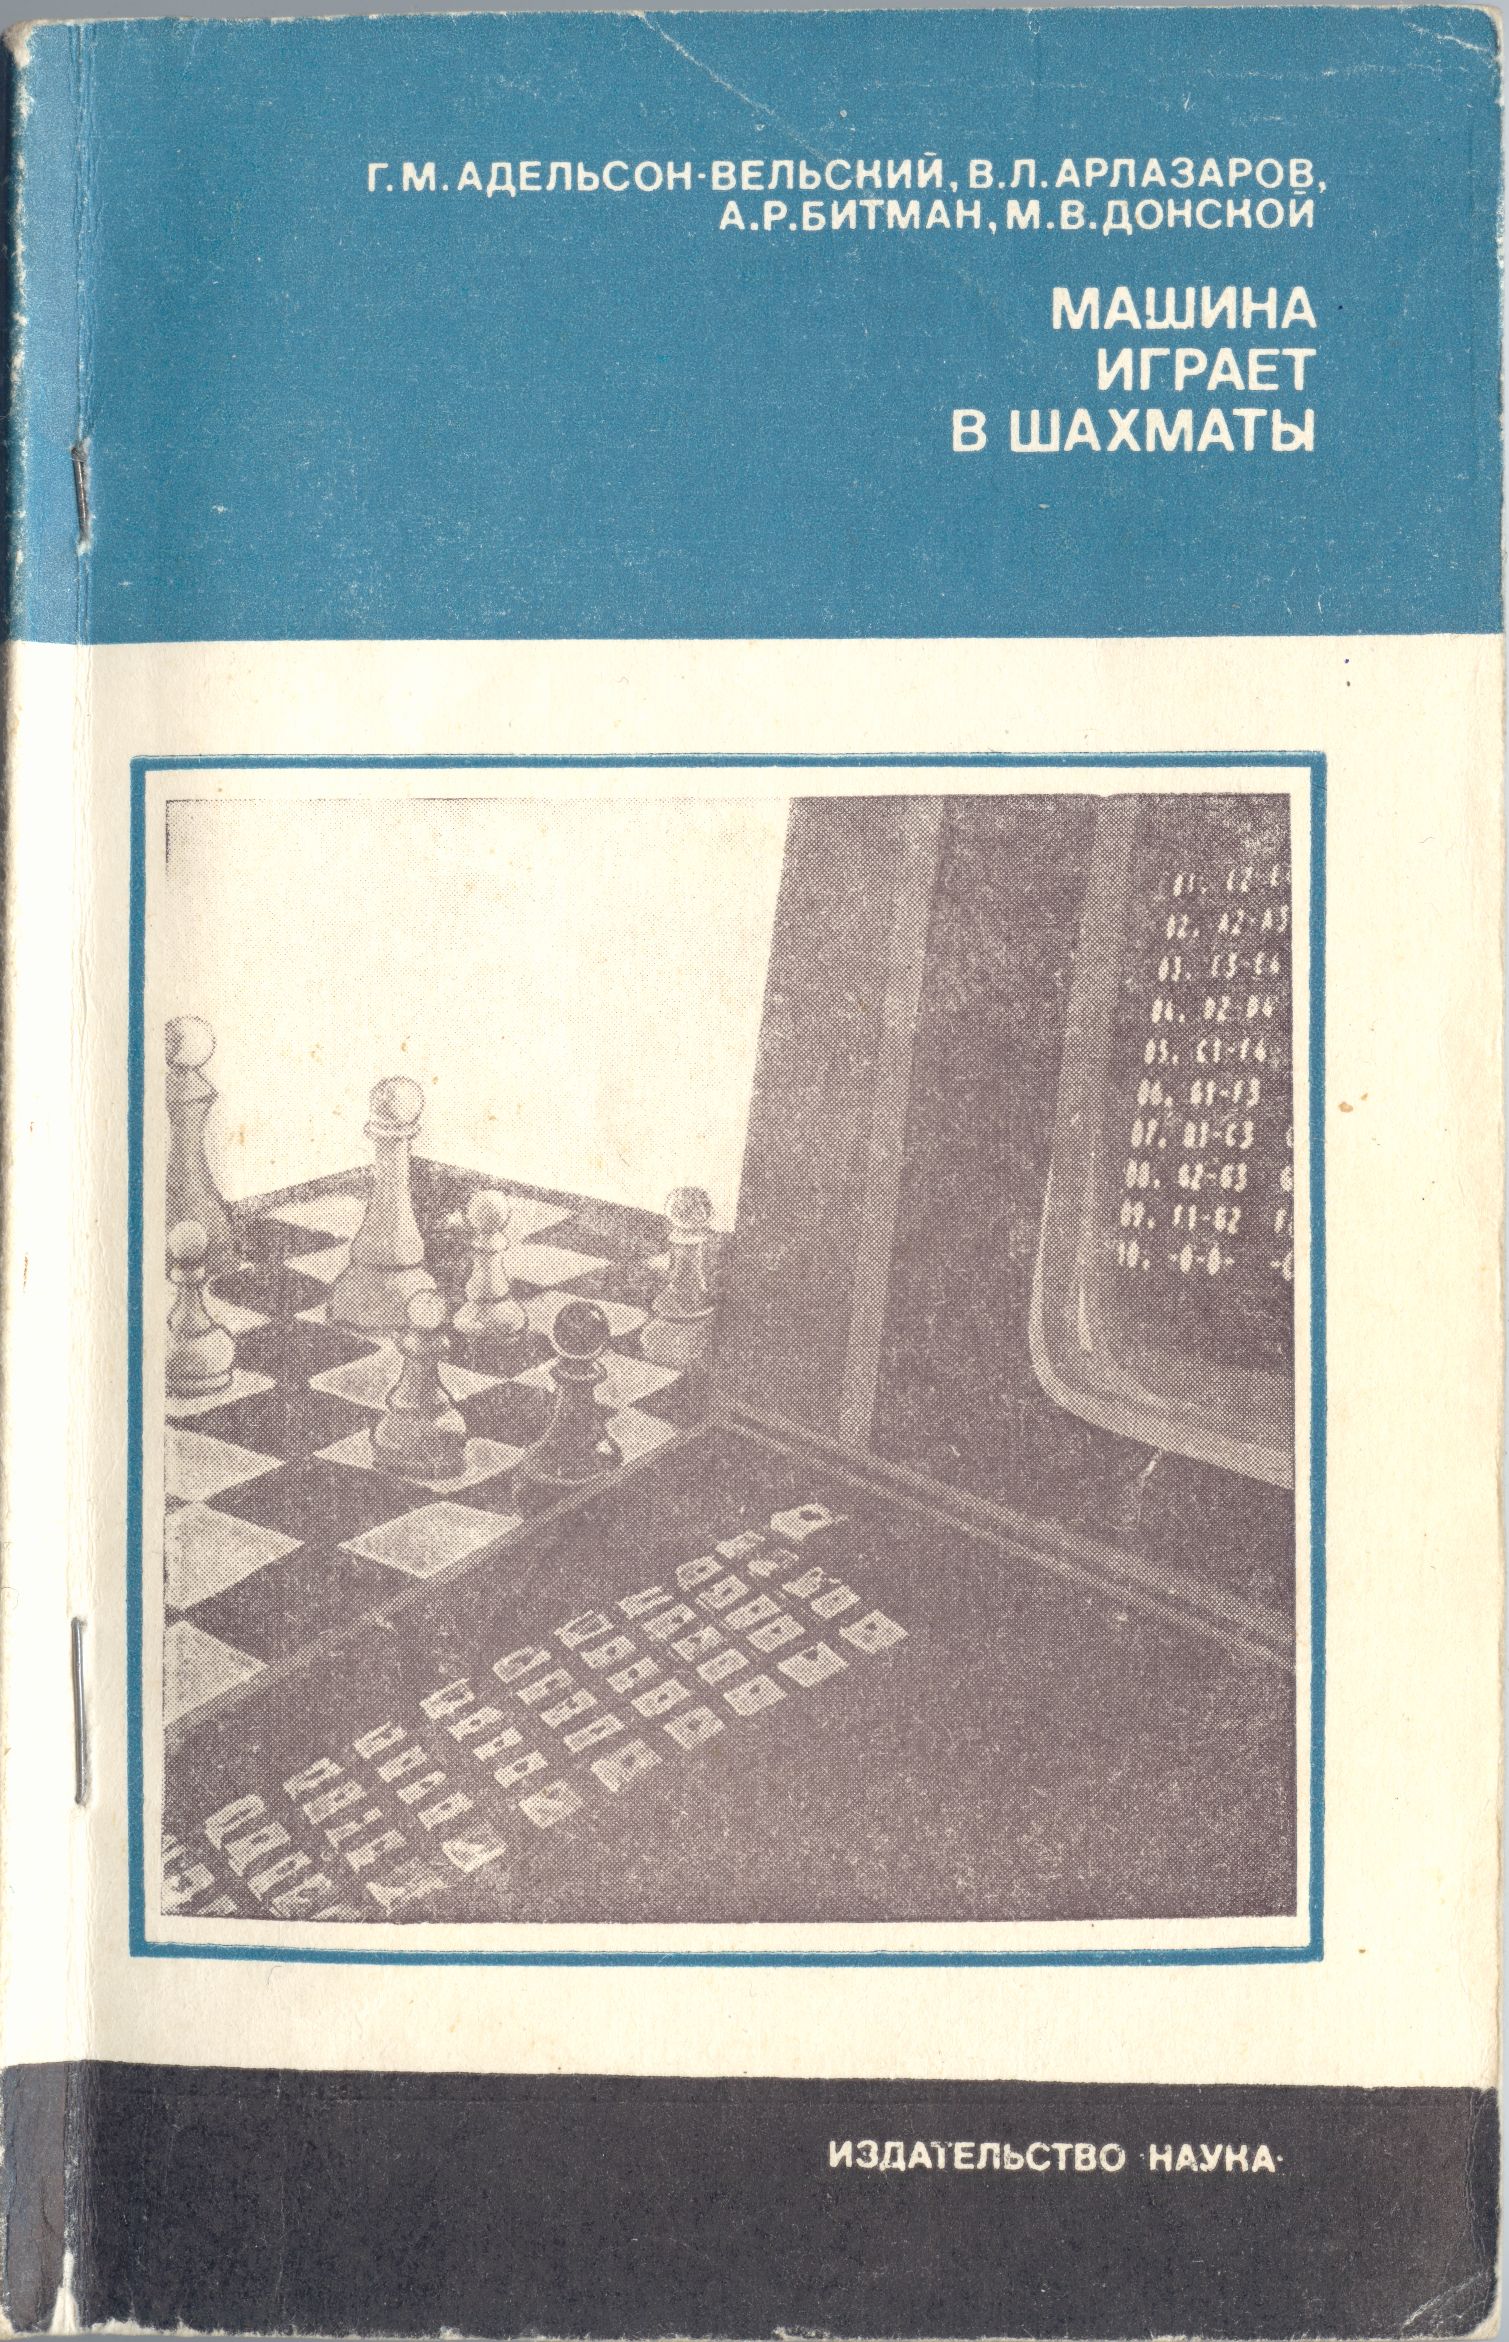 Г.М.Адельсон-Вельский, В.Л.Арлазаров, А.Р.Битман, М.В.Донской. Машина играет в шахматы, Москва, 1983